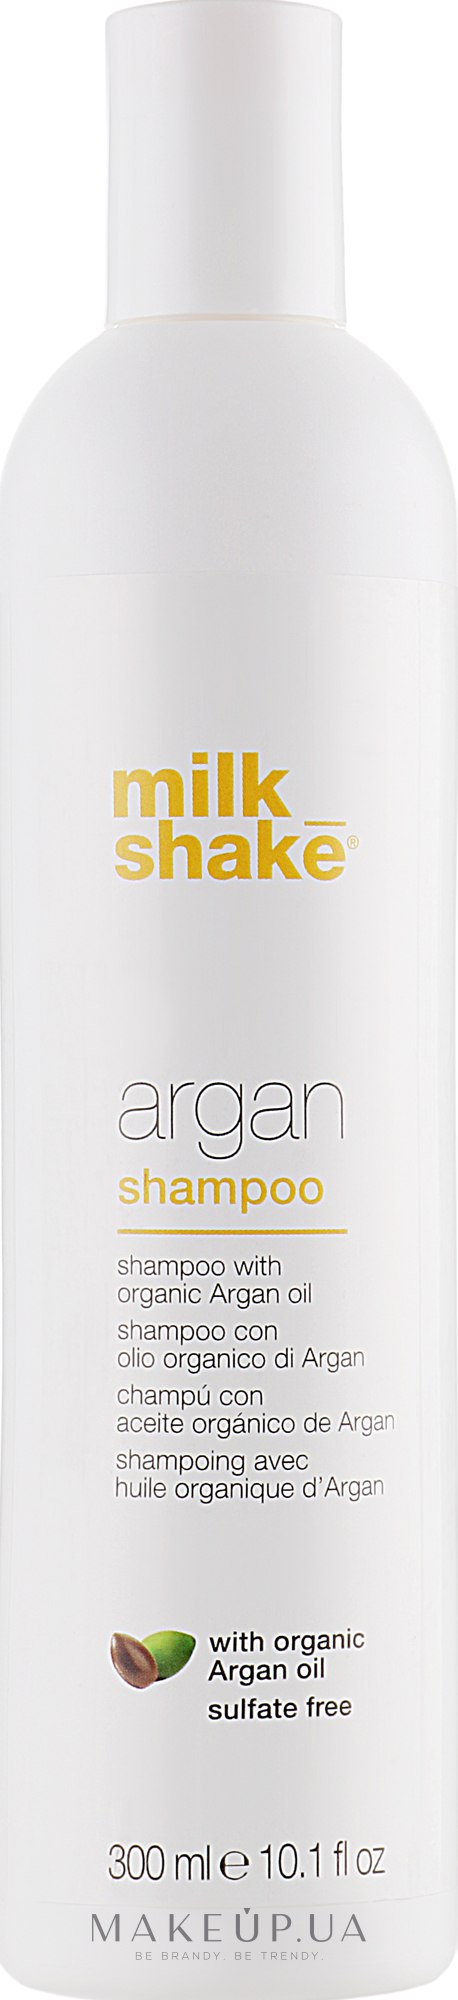 Шампунь для волос с маслом аргана - Milk_Shake Argan Hair Shampoo — фото 300ml